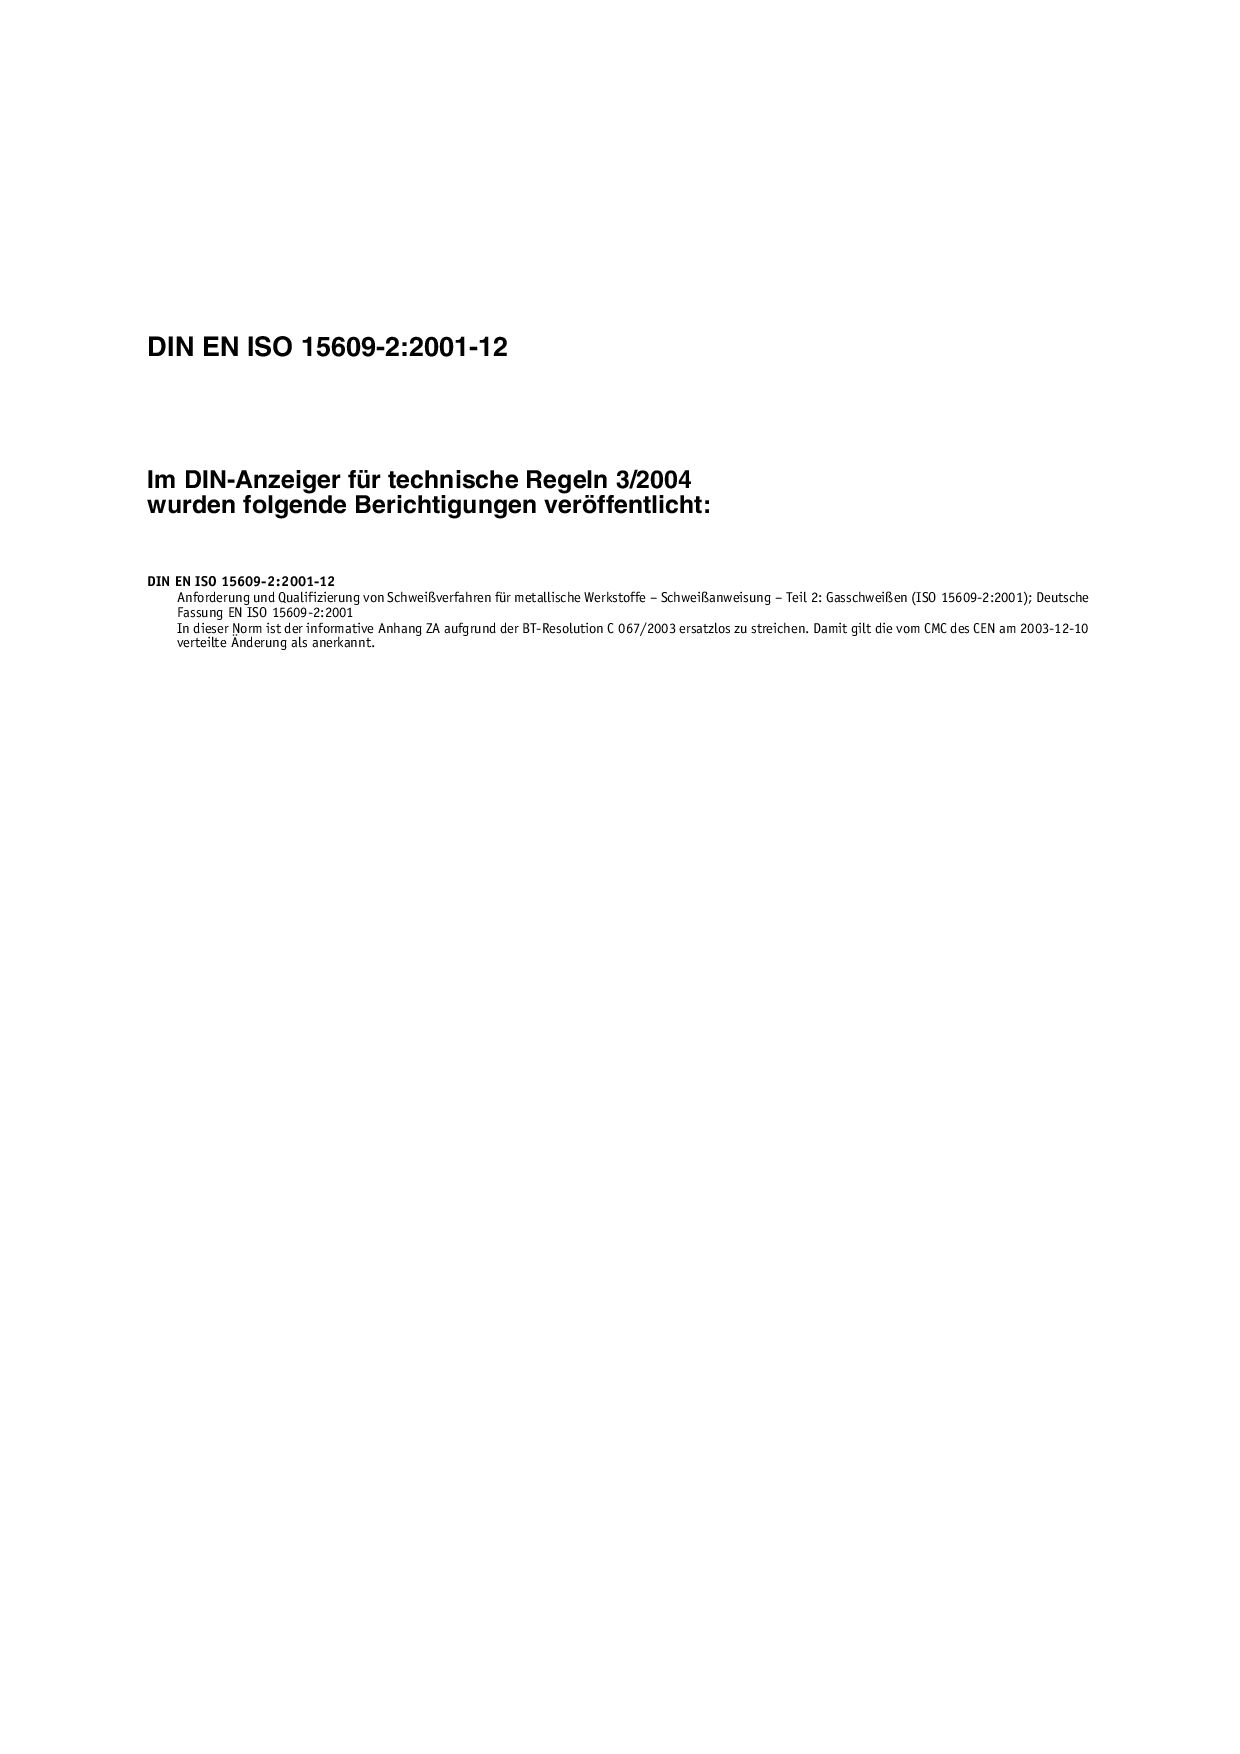 DIN EN ISO 15609-2 Berichtigung:2004封面图